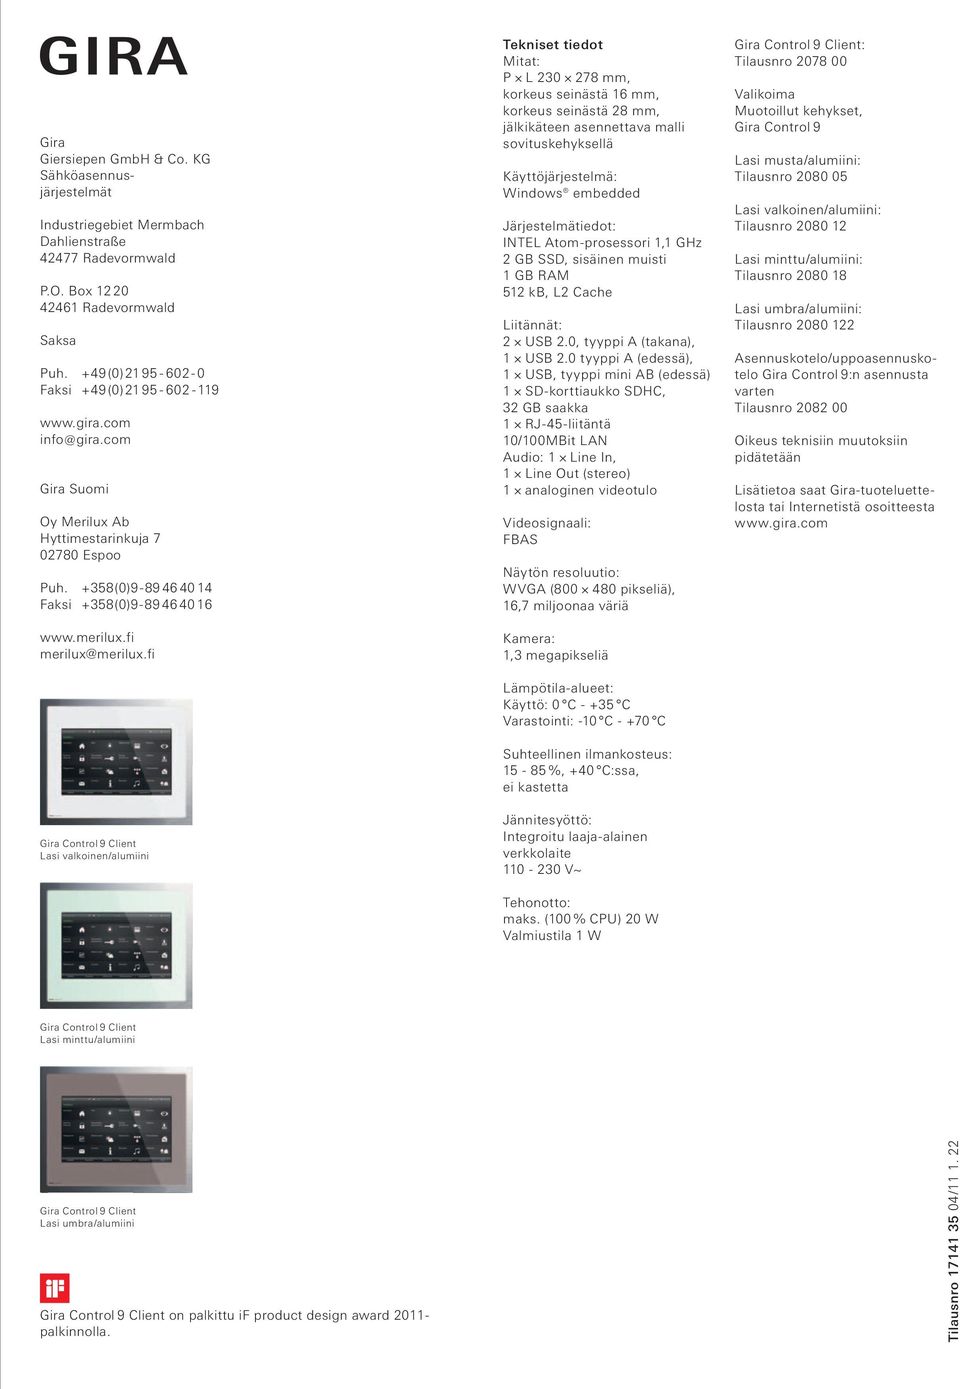 fi Lasi valkoinen/alumiini Tekniset tiedot Mitat: P L 230 278 mm, korkeus seinästä 16 mm, korkeus seinästä 28 mm, jälkikäteen asennettava malli sovituskehyksellä Käyttöjärjestelmä: Windows embedded